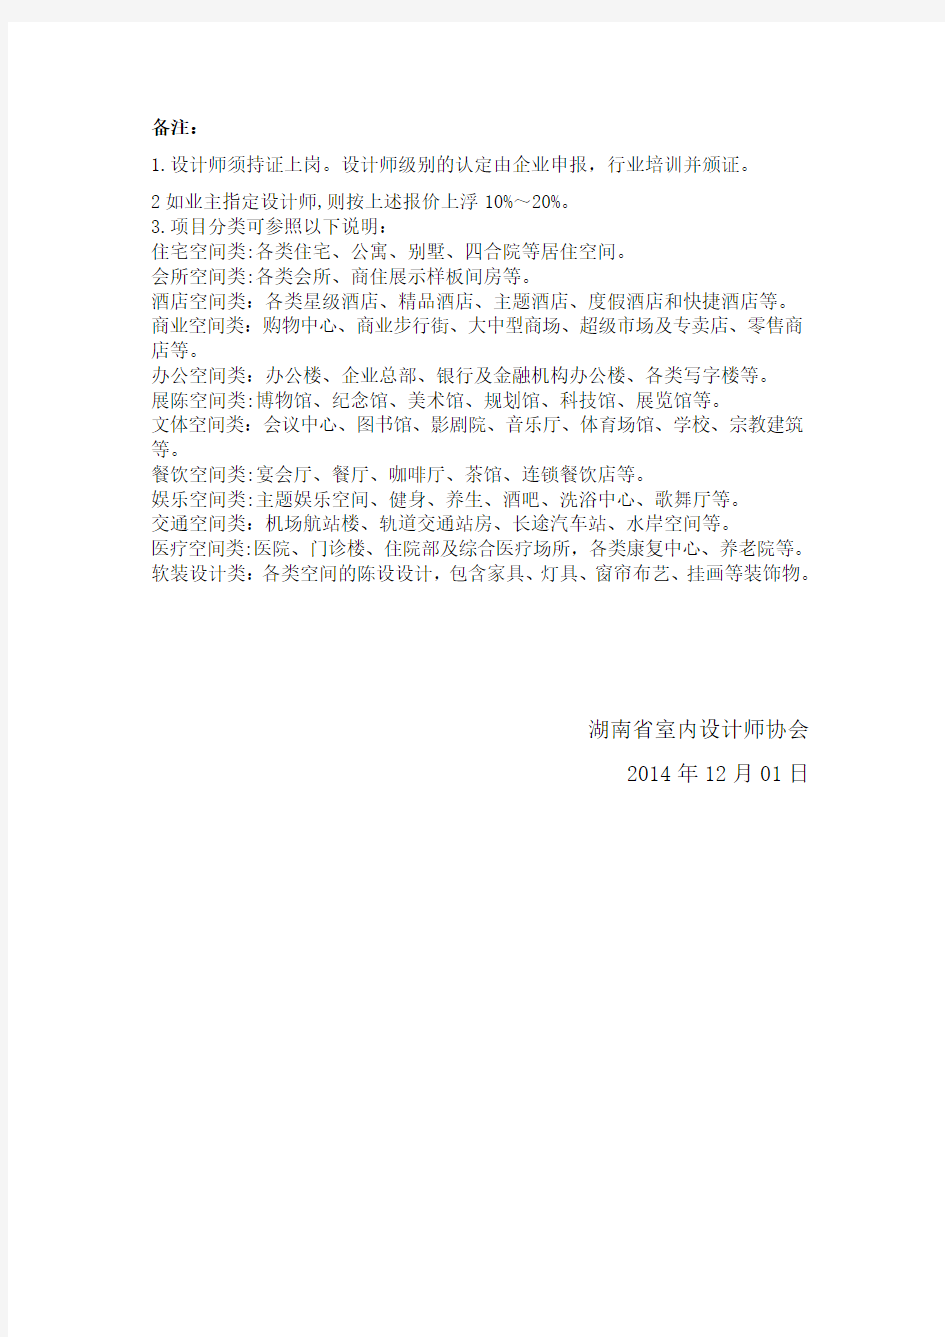 湖南省建筑装饰设计收费标准指导意见(2014版)